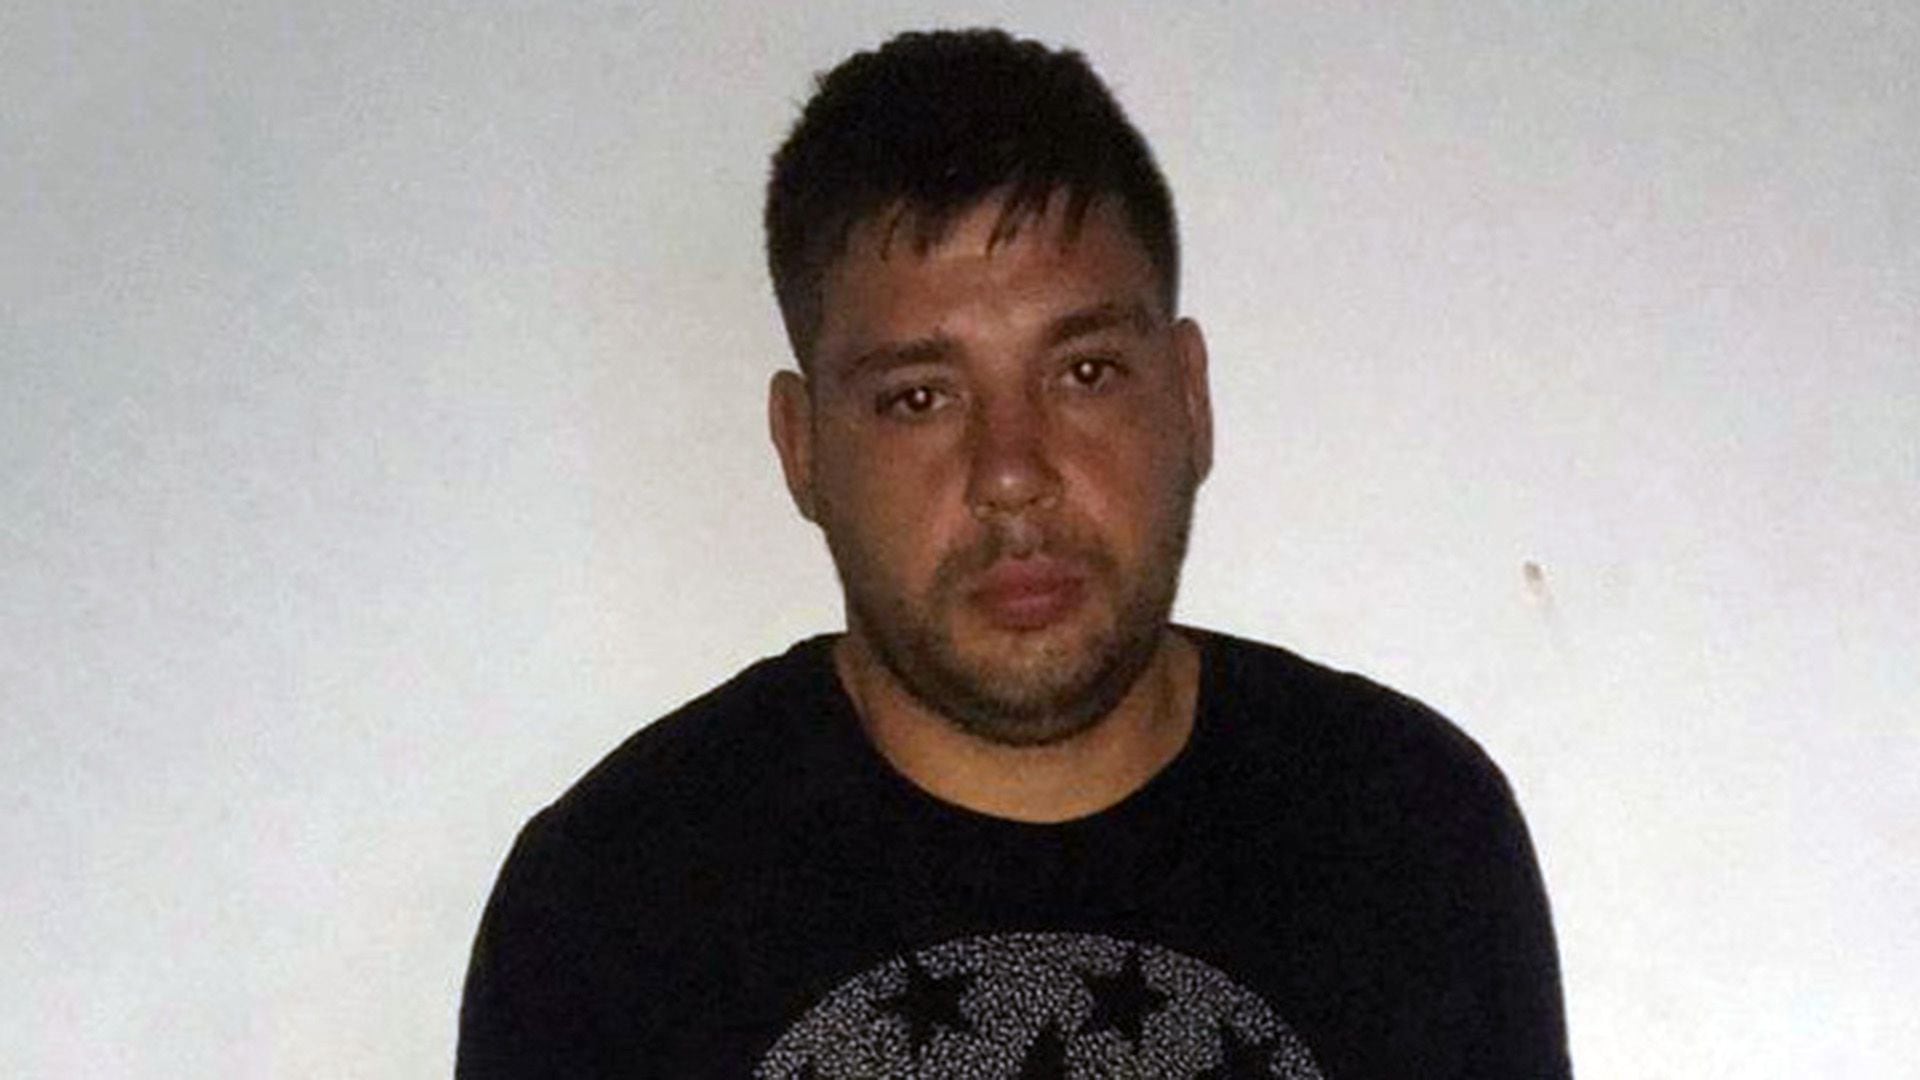 Identificaron al asesino del cajero del banco nación en un robo Alberto Manuel Freijo alias Aceite